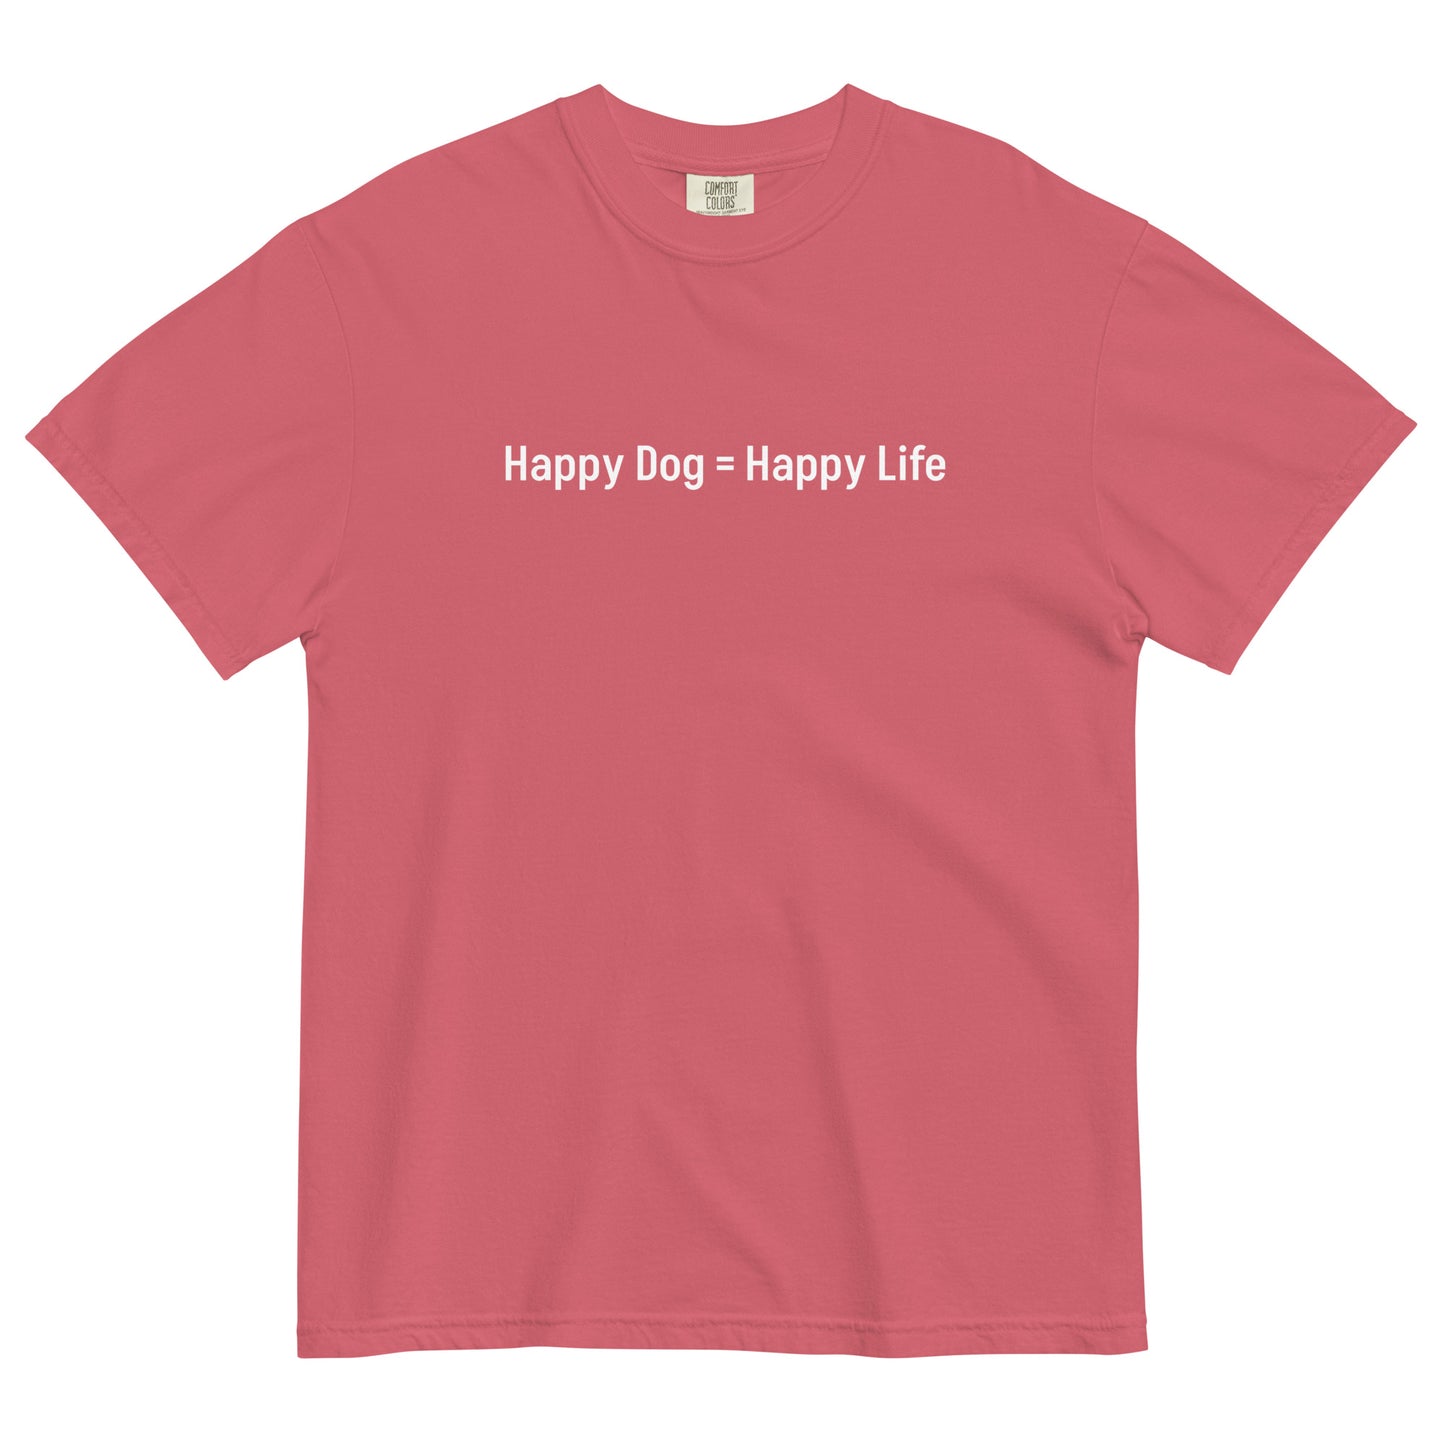 Happy Dog = Happy Life